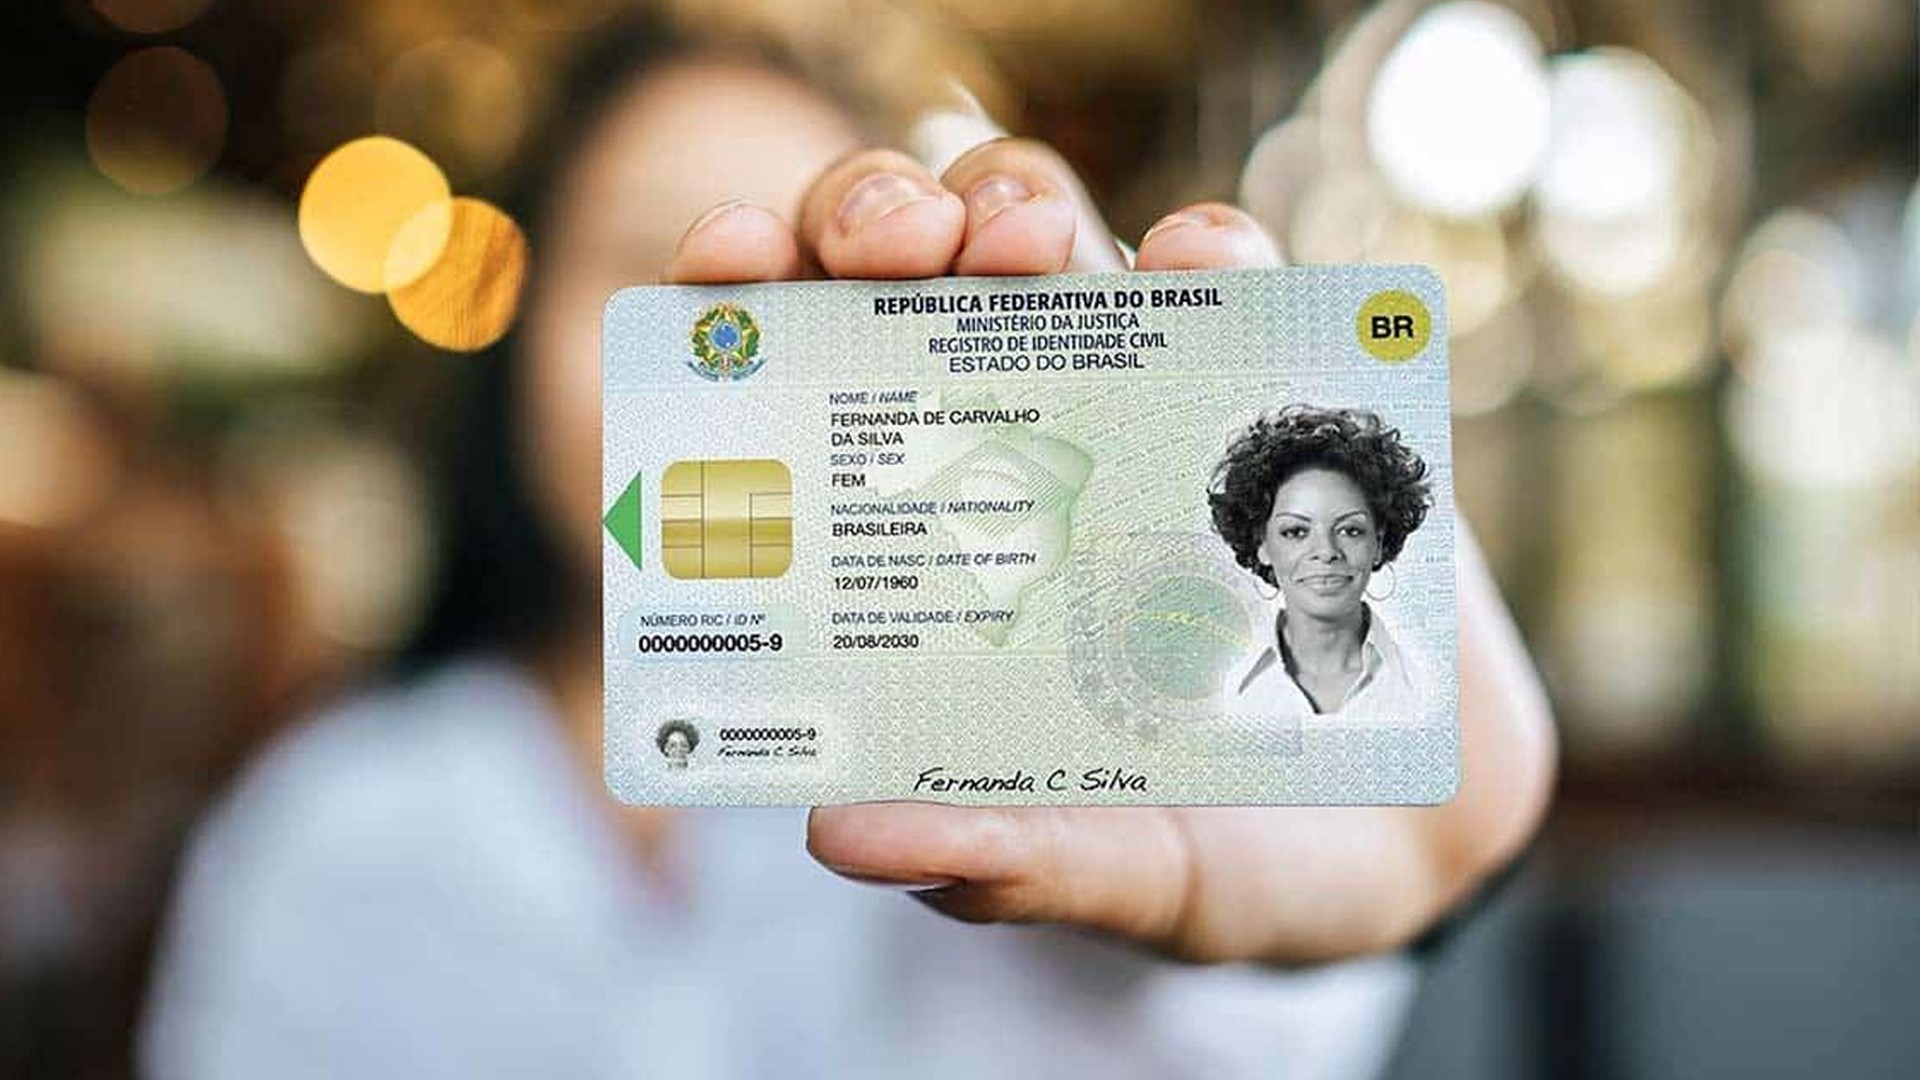 Carteira de Identidade Nacional 'novo RG' começará a ser emitido em